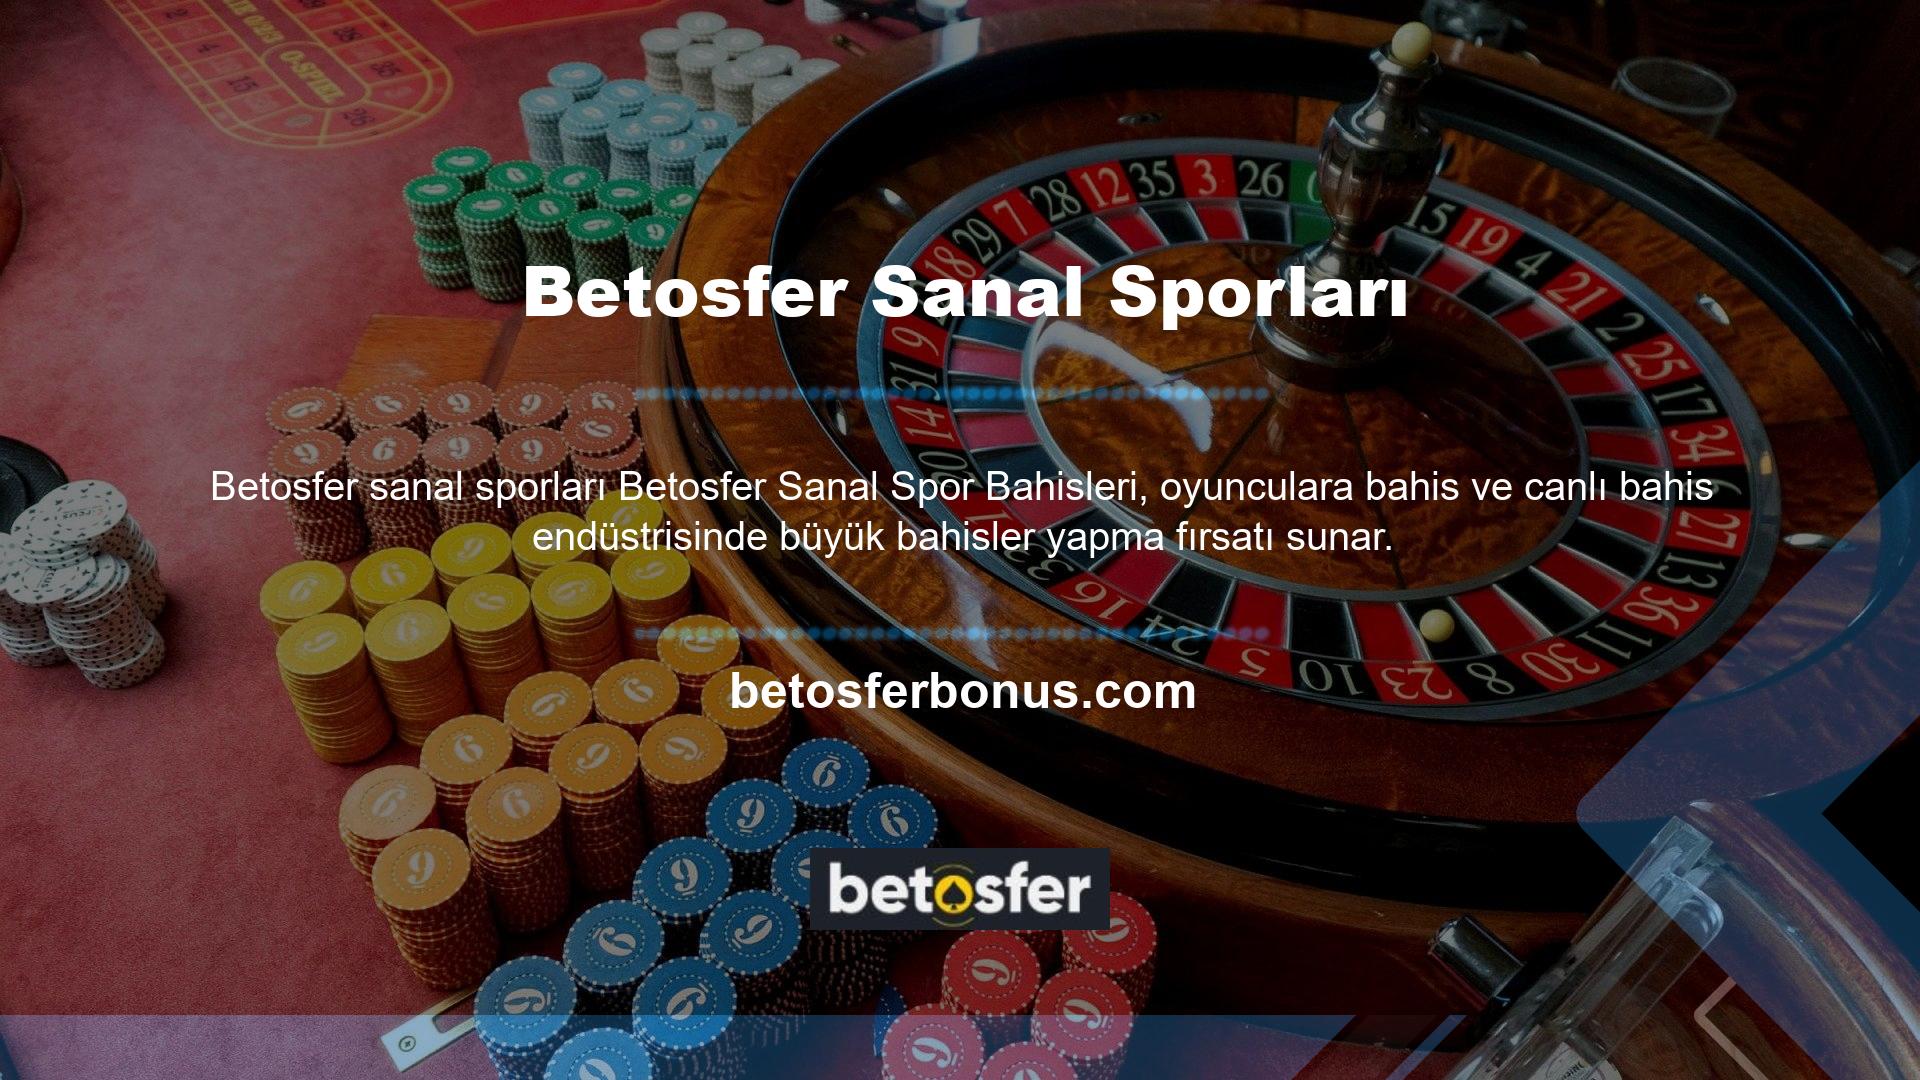 Betosfer Canlı Casino sitesinde en yüksek sanal bahislerin sunulduğu Sanal Bahis kategorisini de ziyaret edebilirsiniz